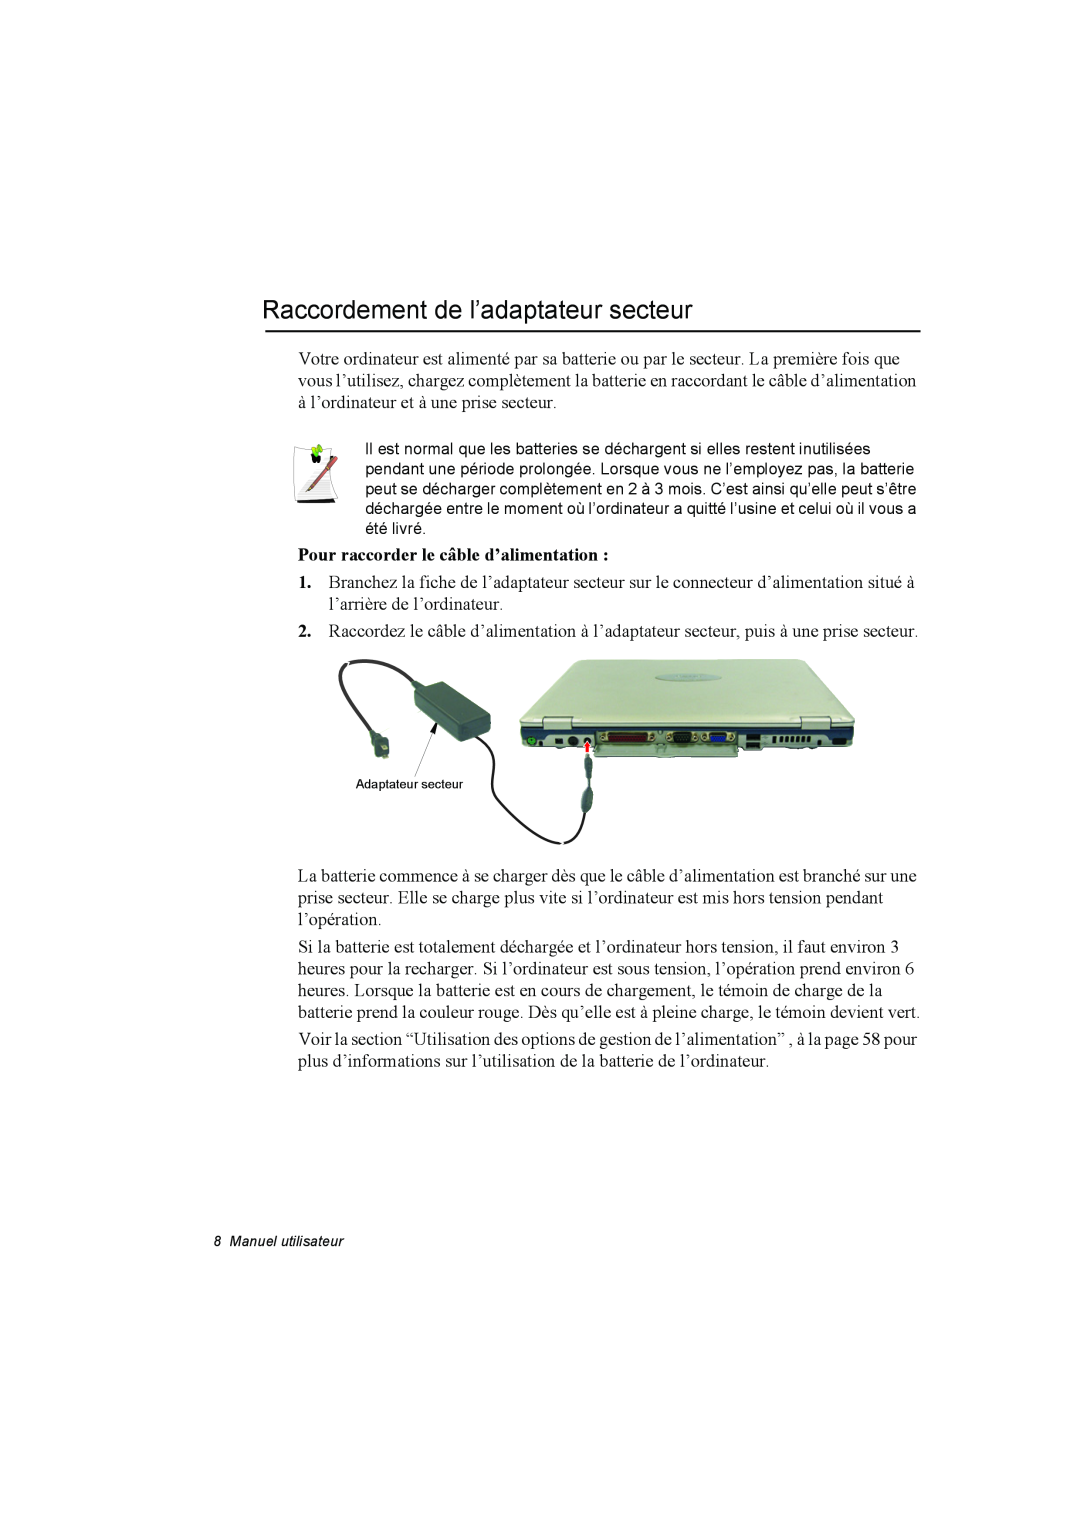 Samsung NP10FH00MS/SUK, NP10FP018N/SEF manual Raccordement de l’adaptateur secteur, Pour raccorder le câble d’alimentation 